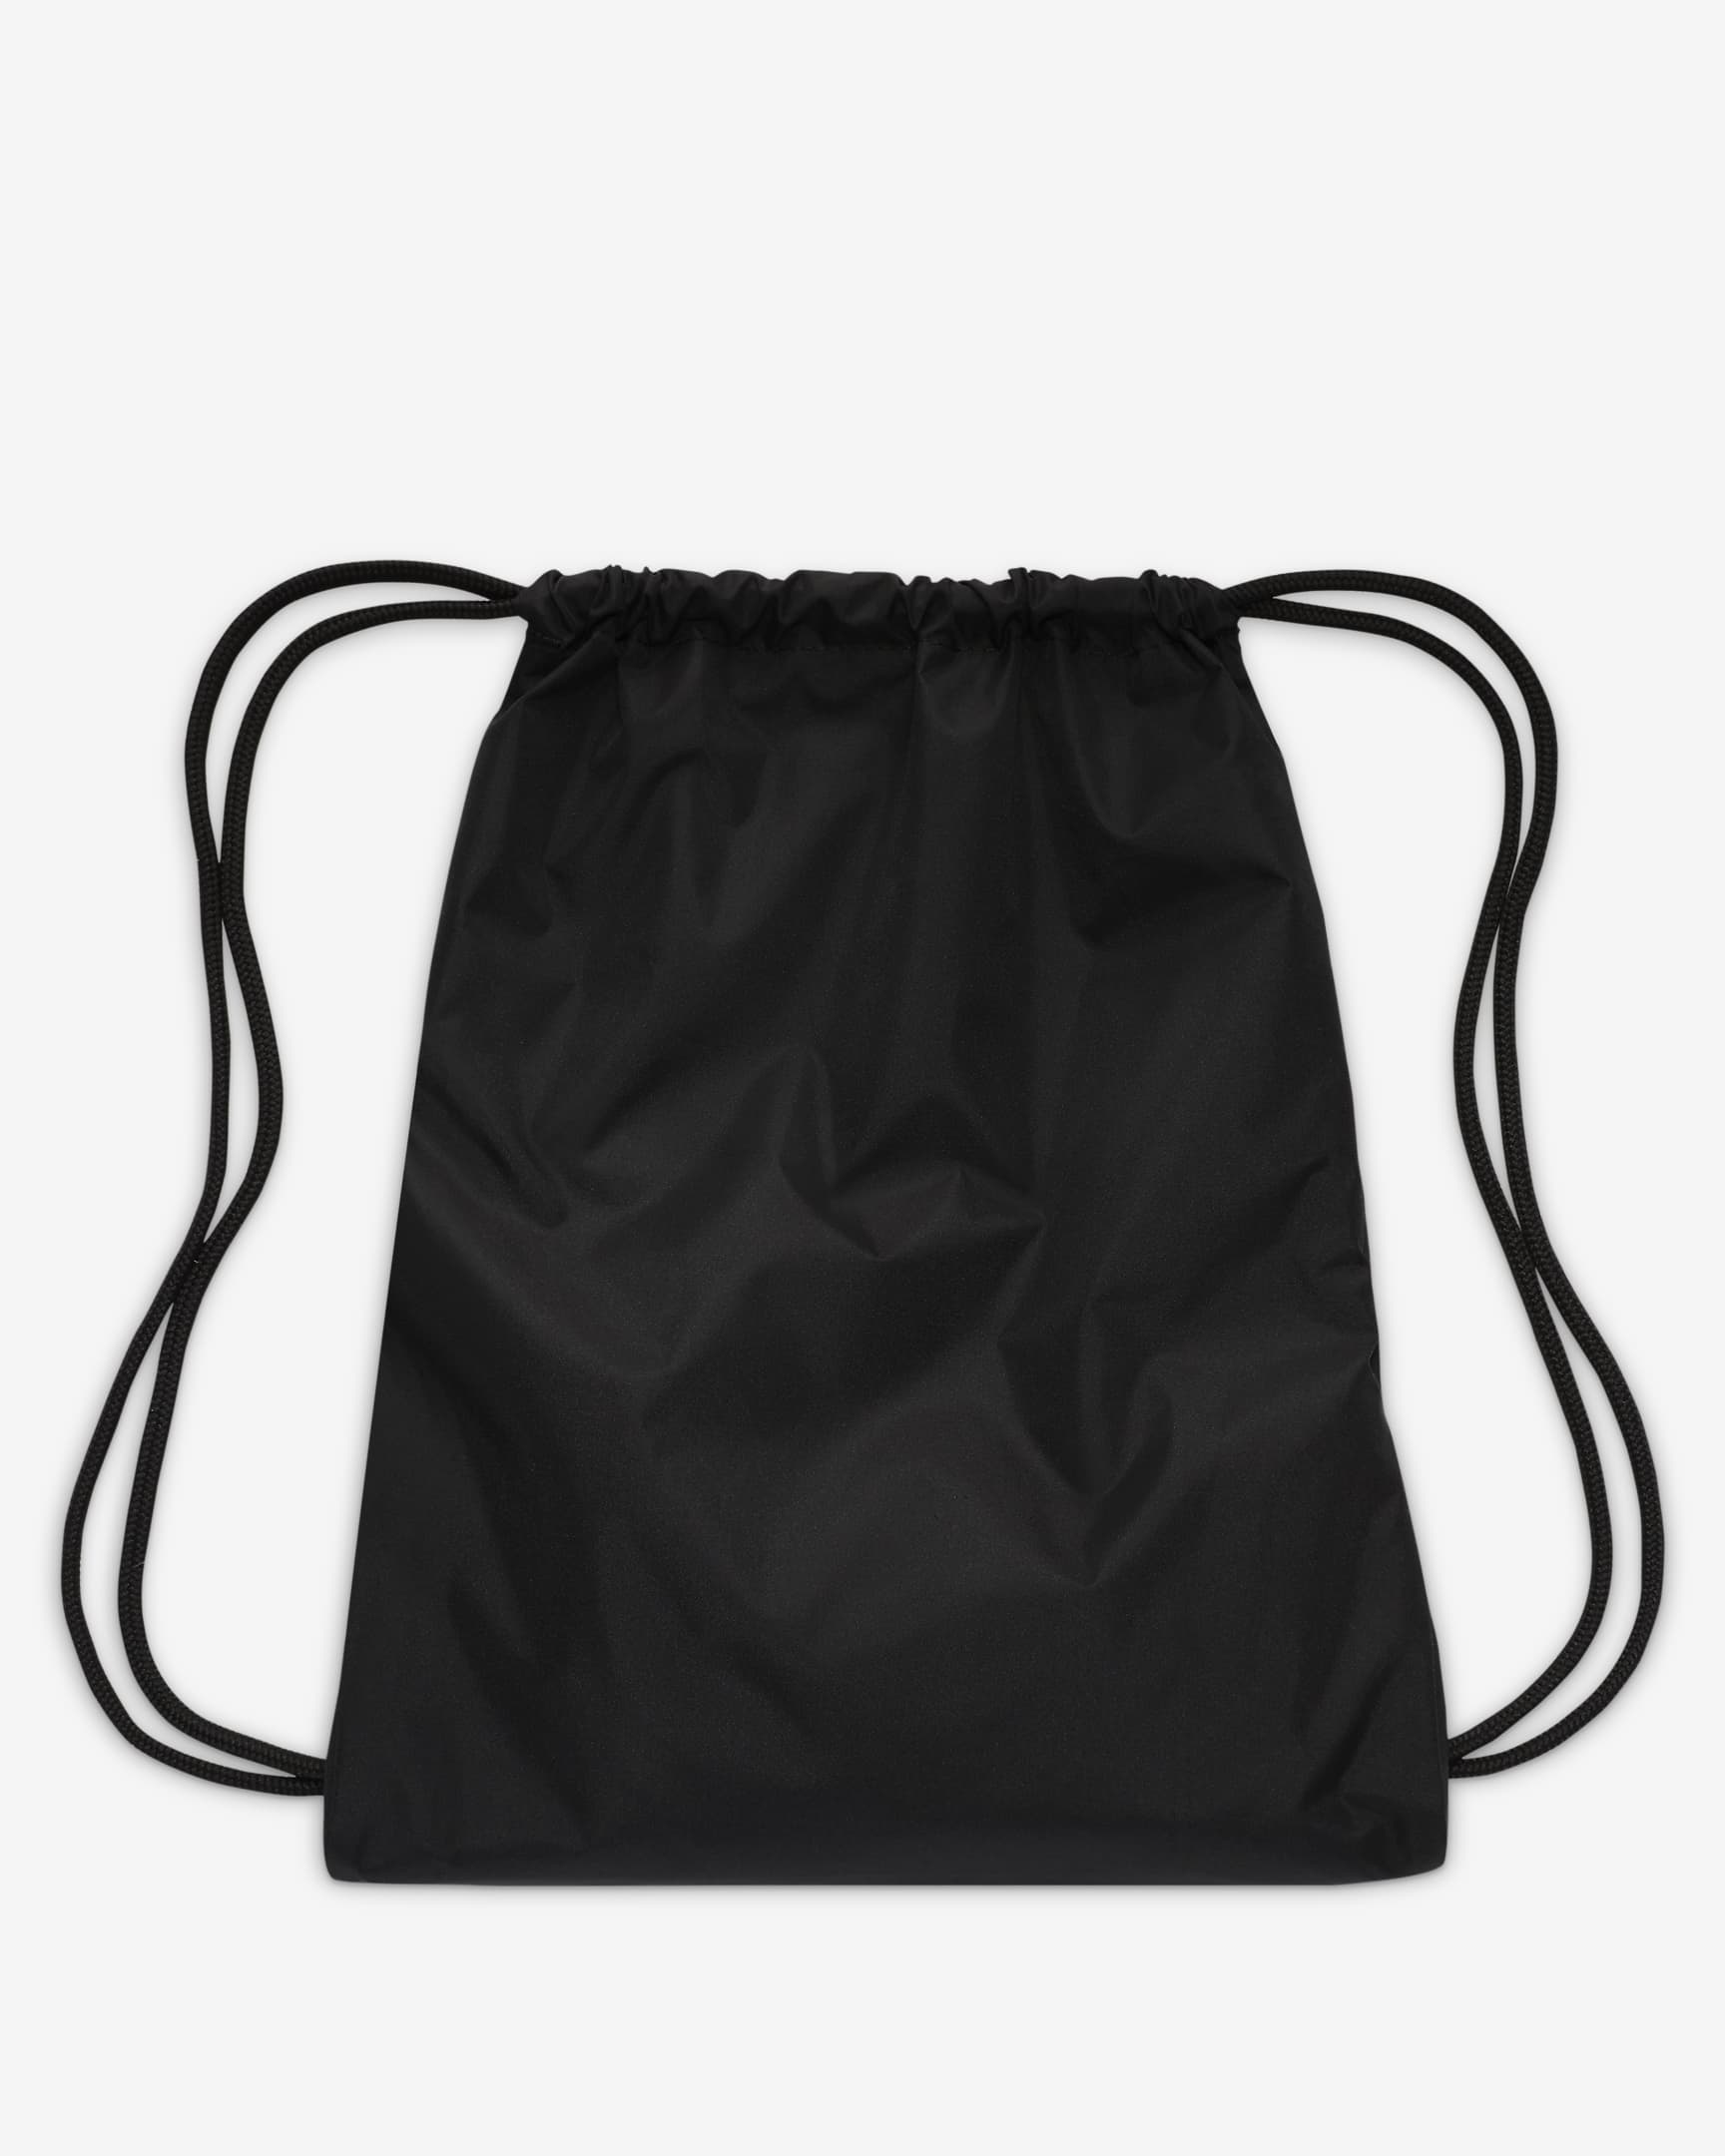 Nike Kids' Drawstring Bag (12L). Nike.com